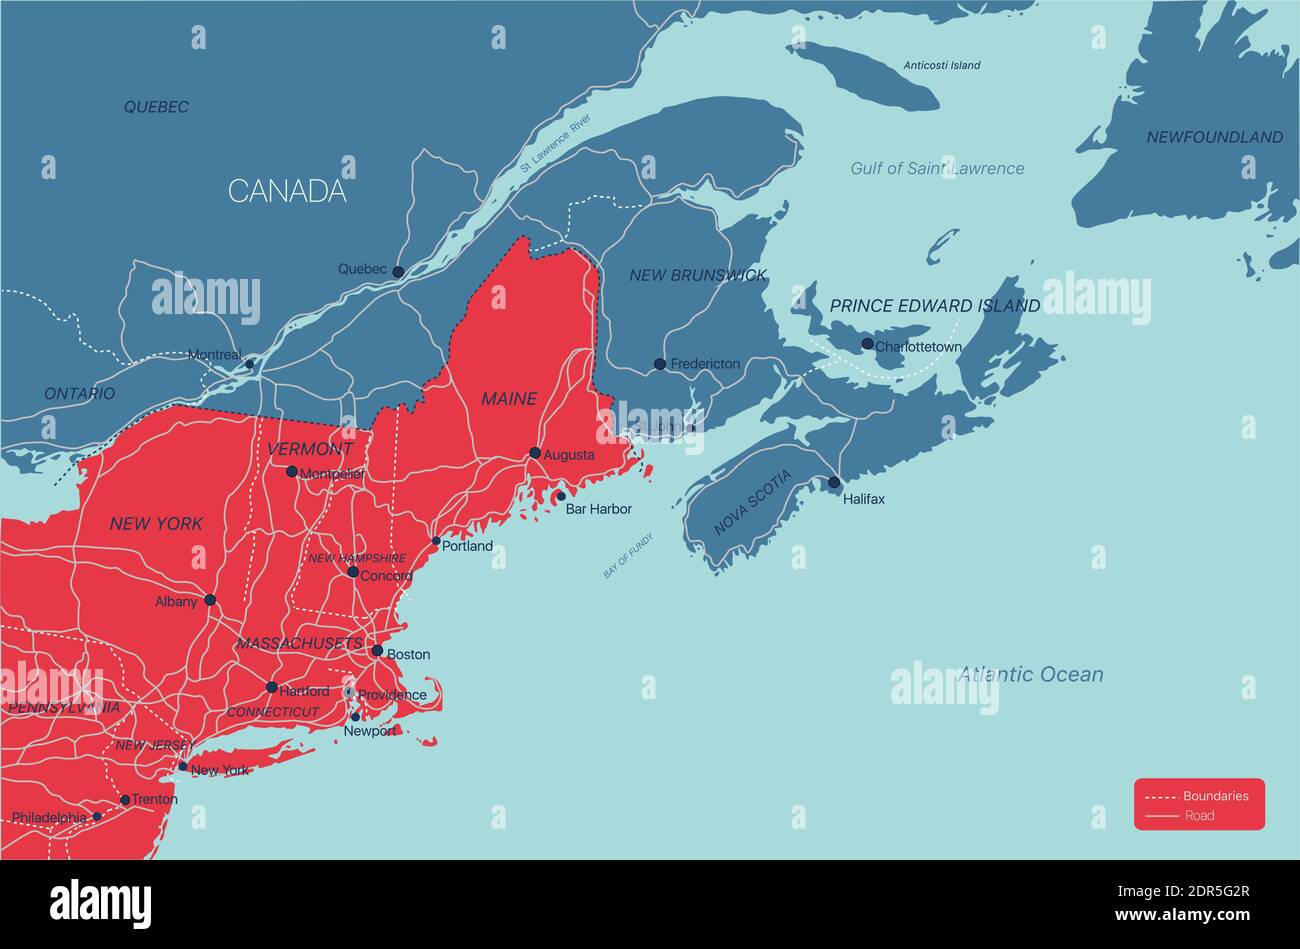 Regione del New England Mappa dettagliata modificabile con città e città, siti geografici, strade, ferrovie, interstatali e autostrade degli Stati Uniti. File vettoriale EPS-10, Illustrazione Vettoriale